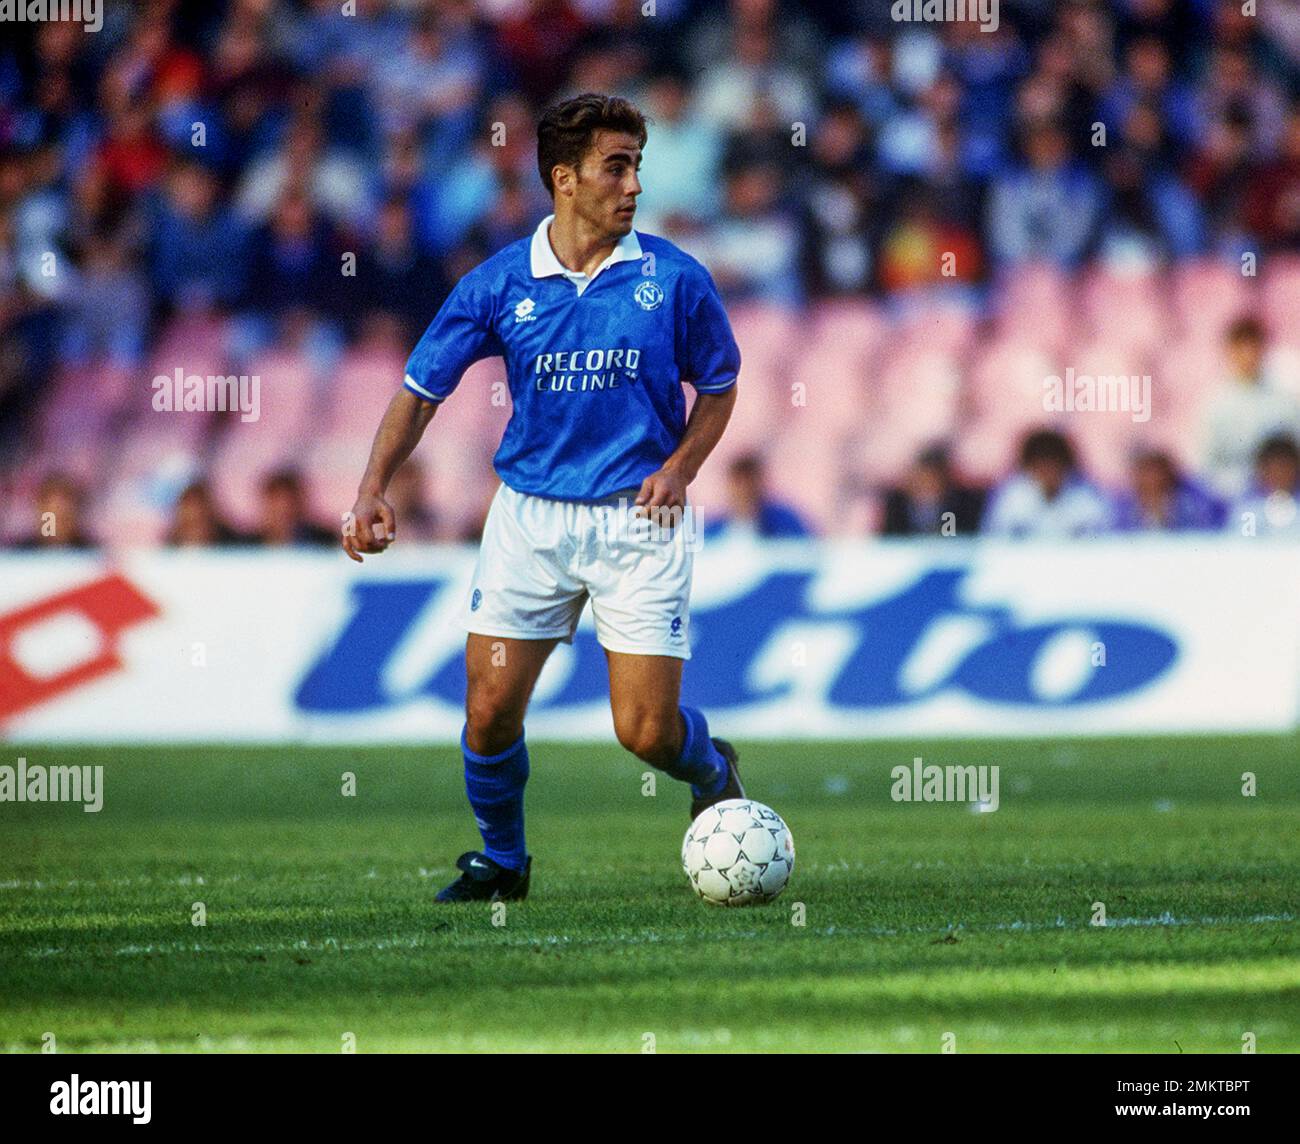 Fabio Cannavaro (Napoli) ; ; 1994 1995 - Football : italian championship 1994 1995 ; ; ; Italy. ;;( photo by aicfoto)(ITALY) [0855] Stock Photo